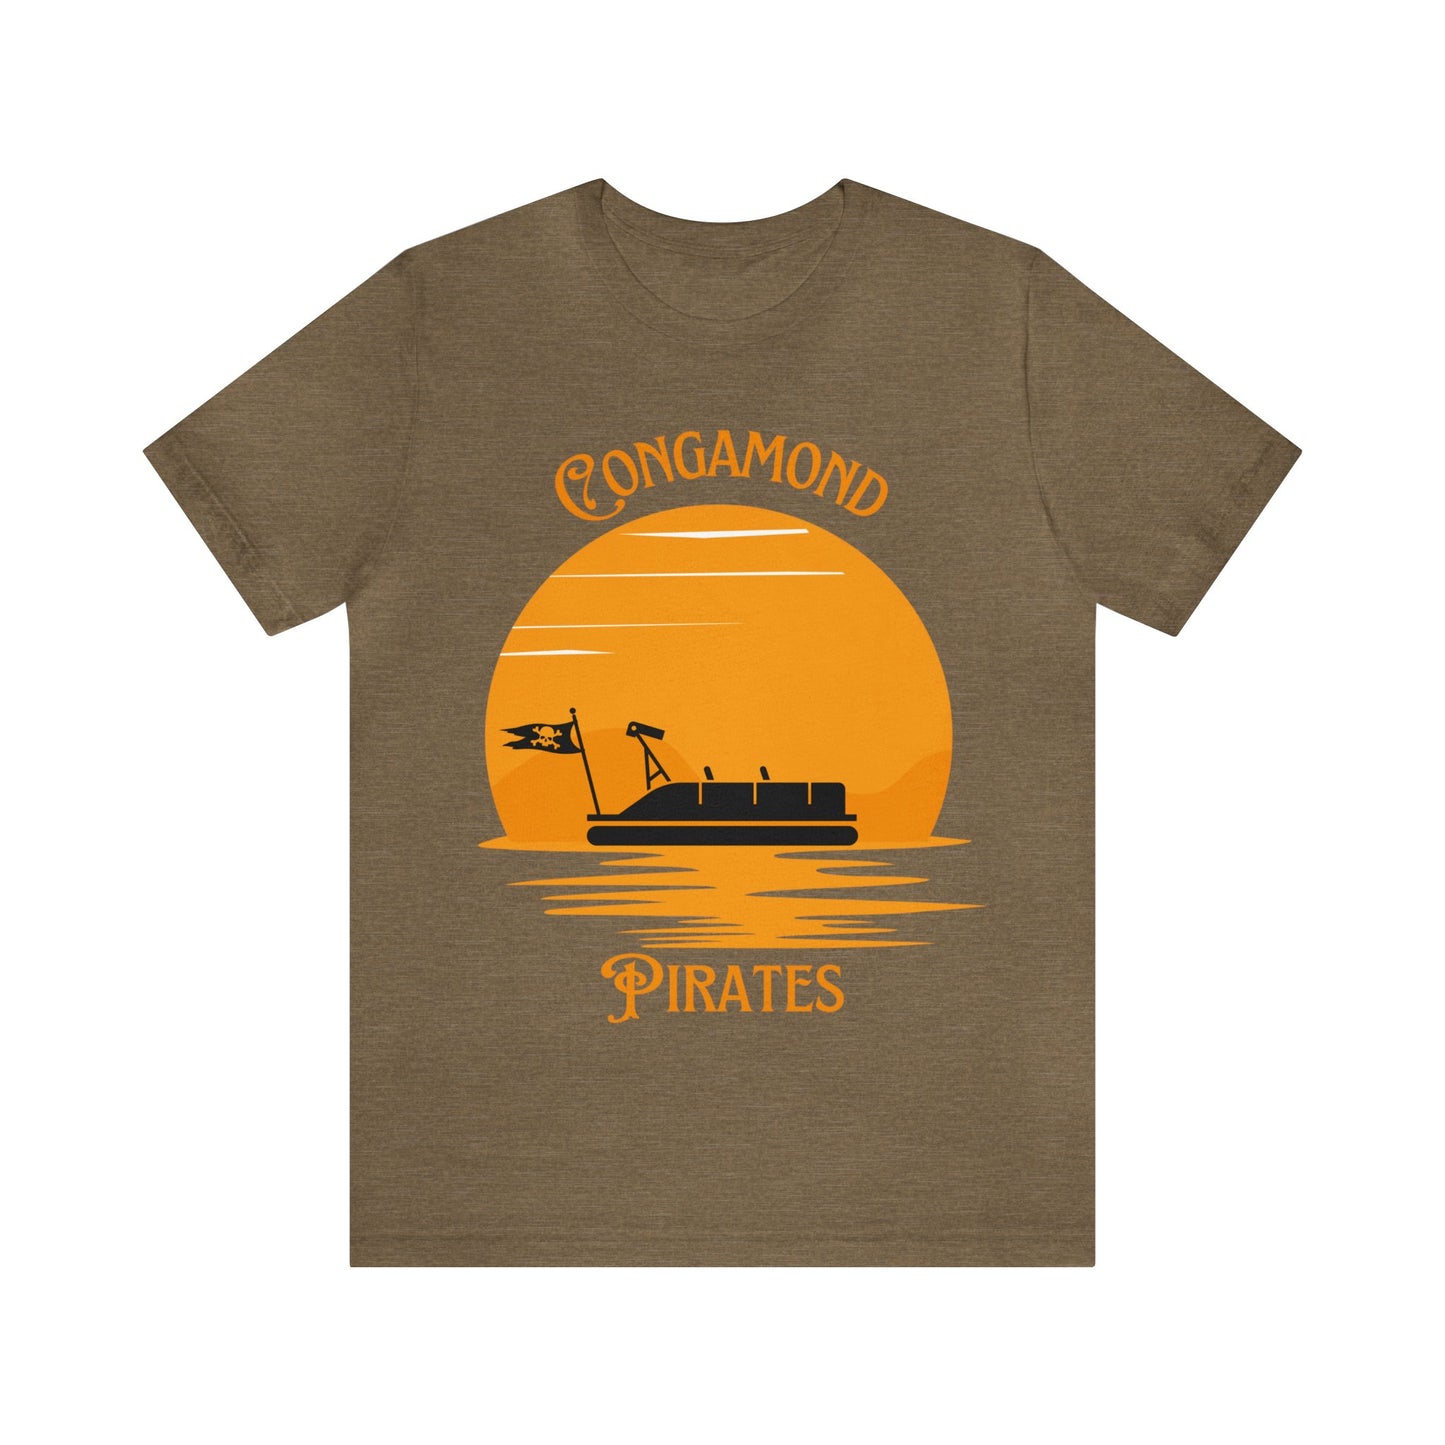 Congamond Pirates T-Shirt